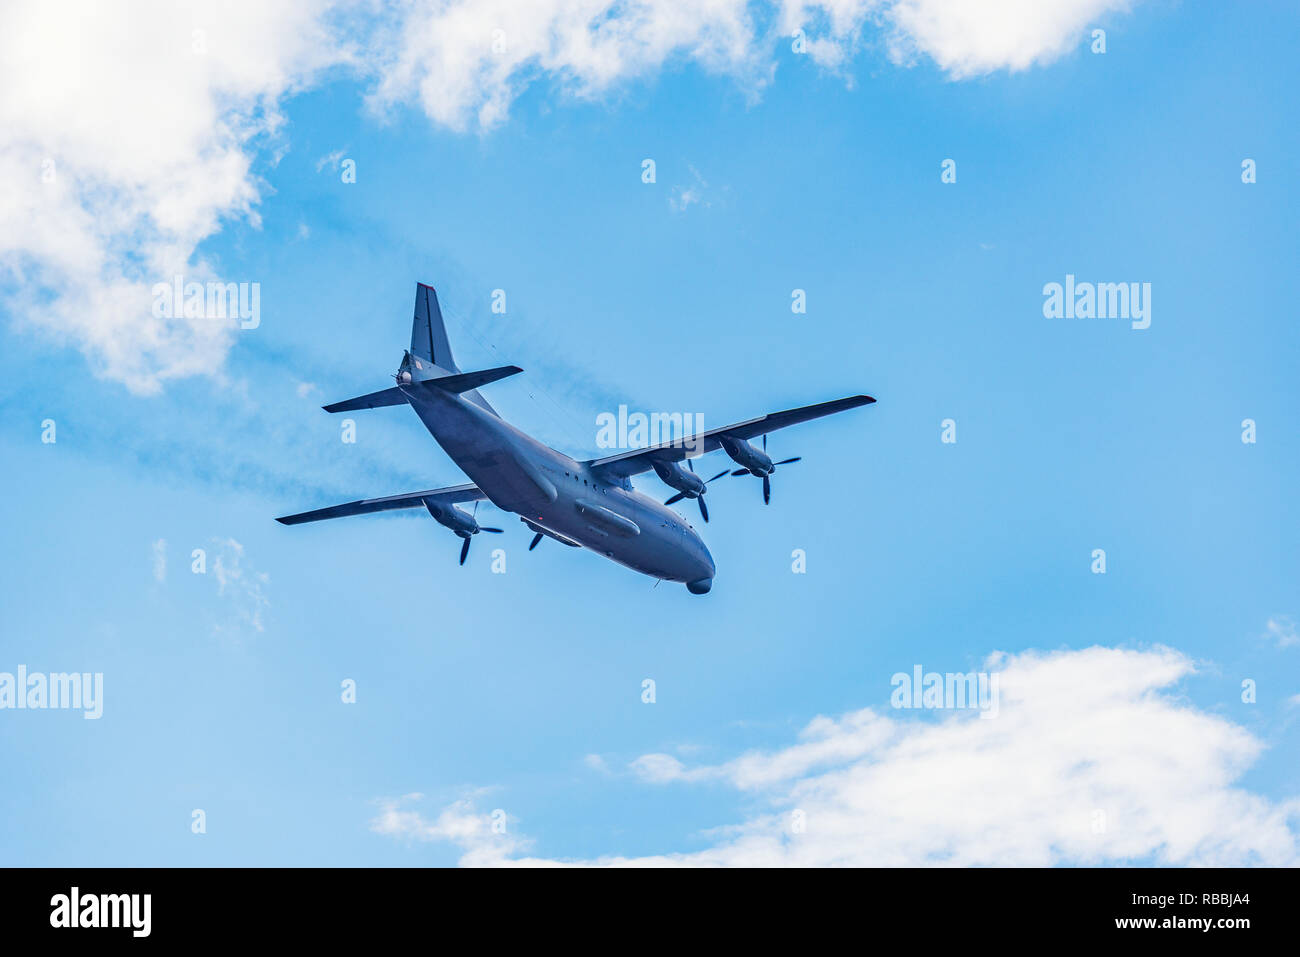 Freight military plane. Stock Photo